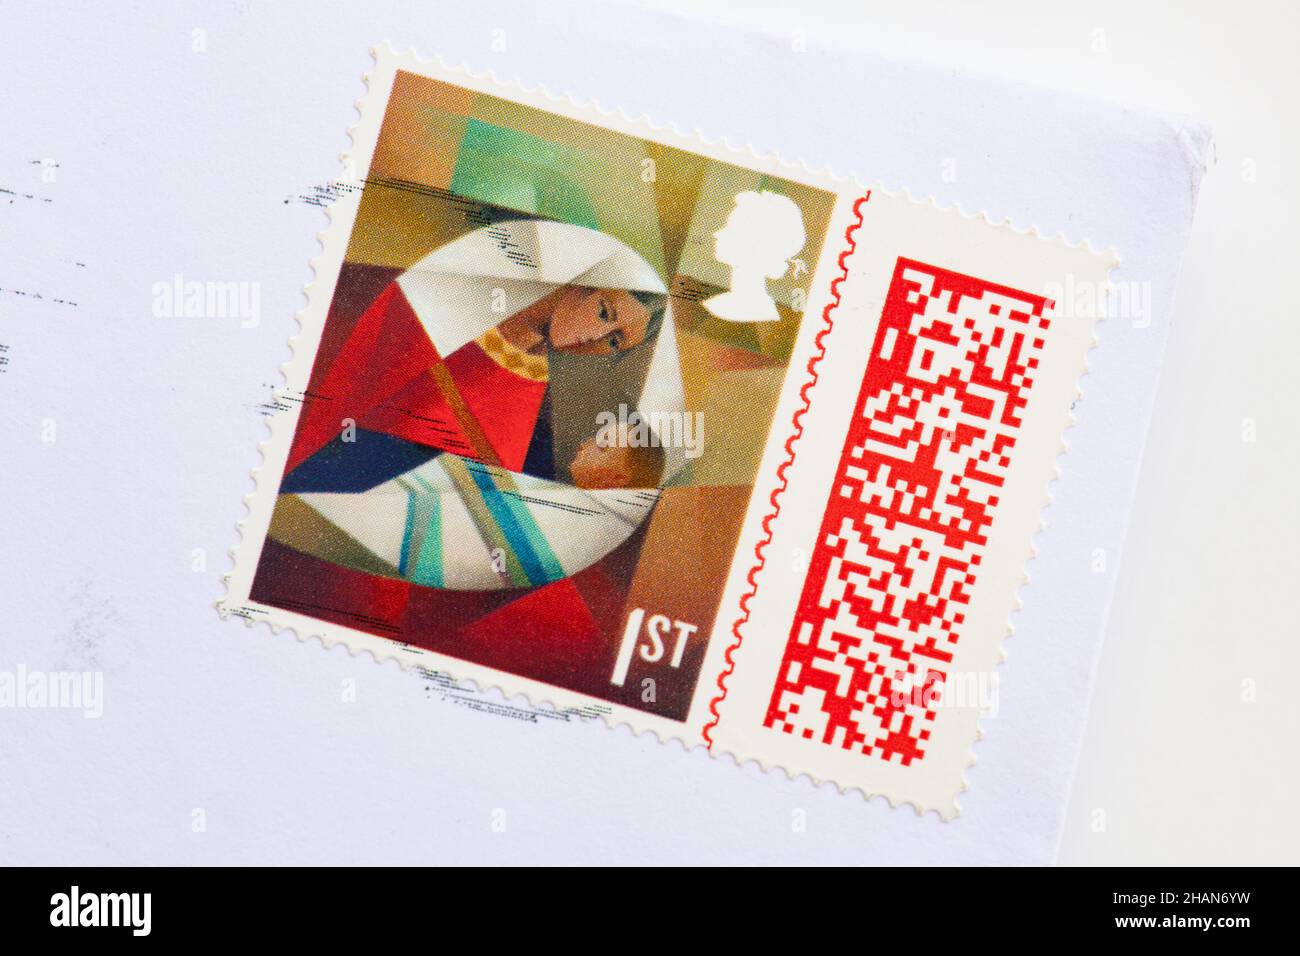 Strichcode auf Weihnachtsmarken von Royal Mail Stockfoto